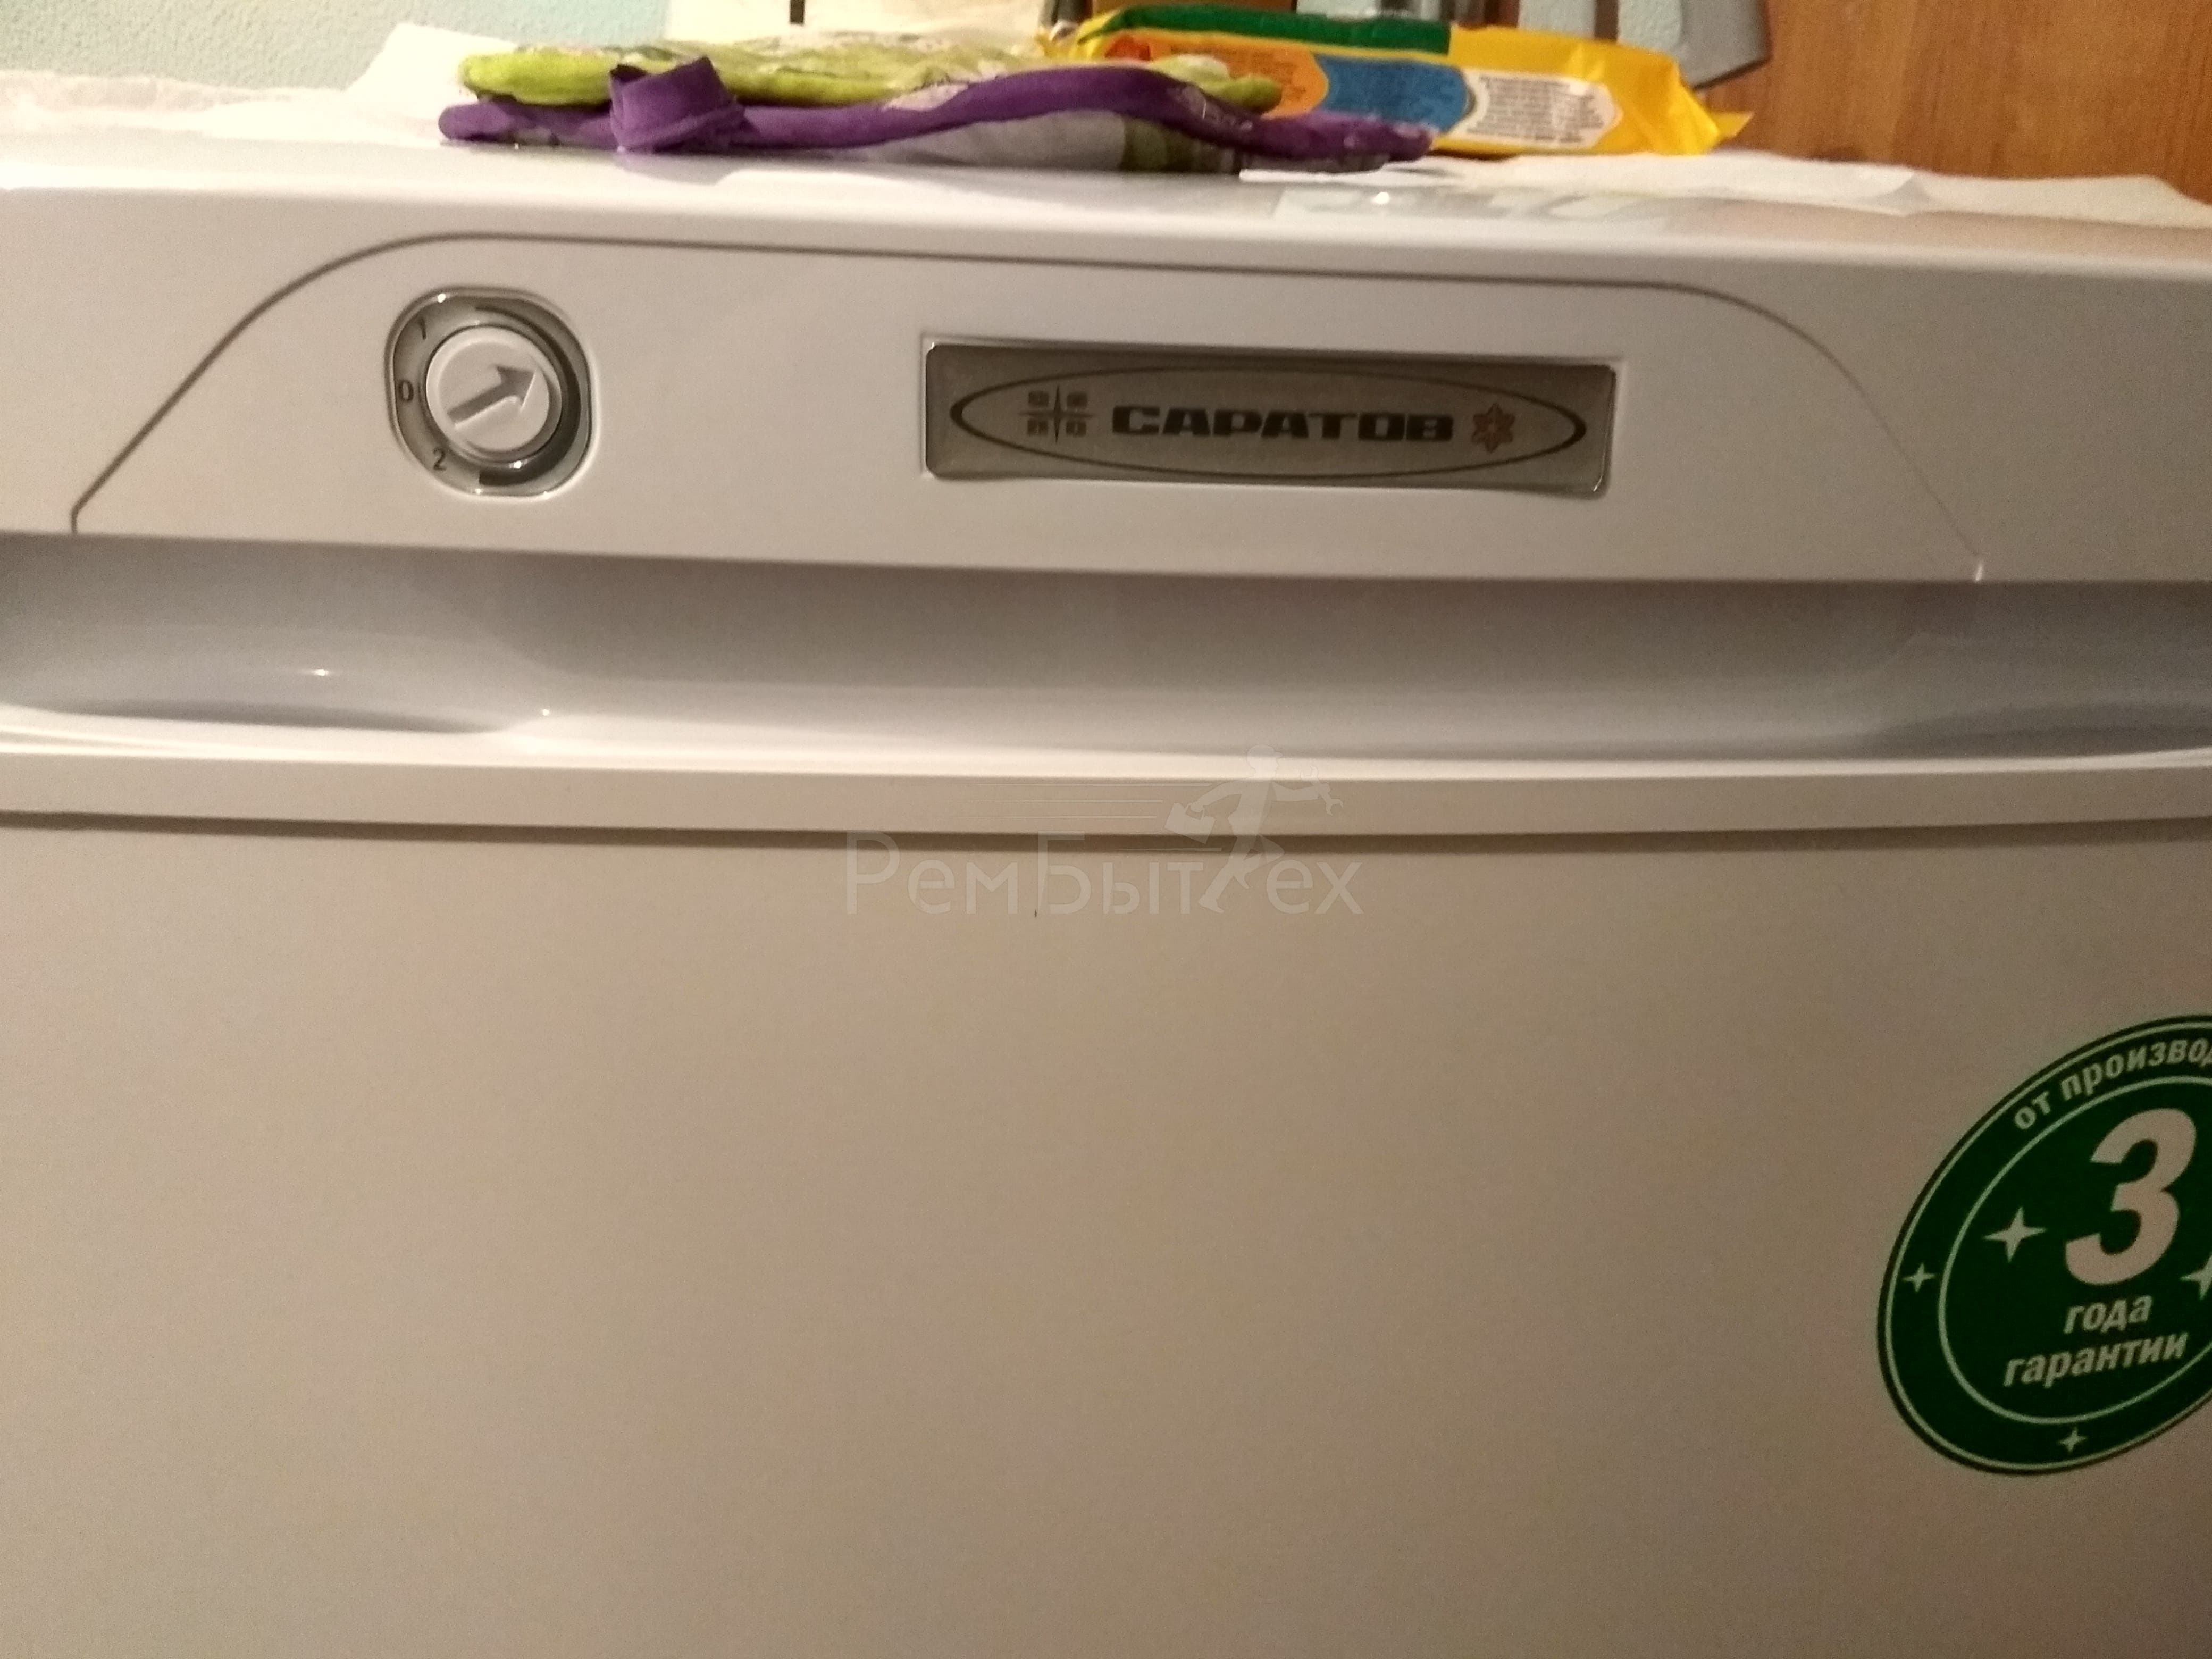 Холодильник Саратов 451, подскажите, в какую сторону крутить регулятор для  нормальной работы холодильника? И нормально ли, что в таком положении  стрелки он часто включается и выключается? | РемБытТех